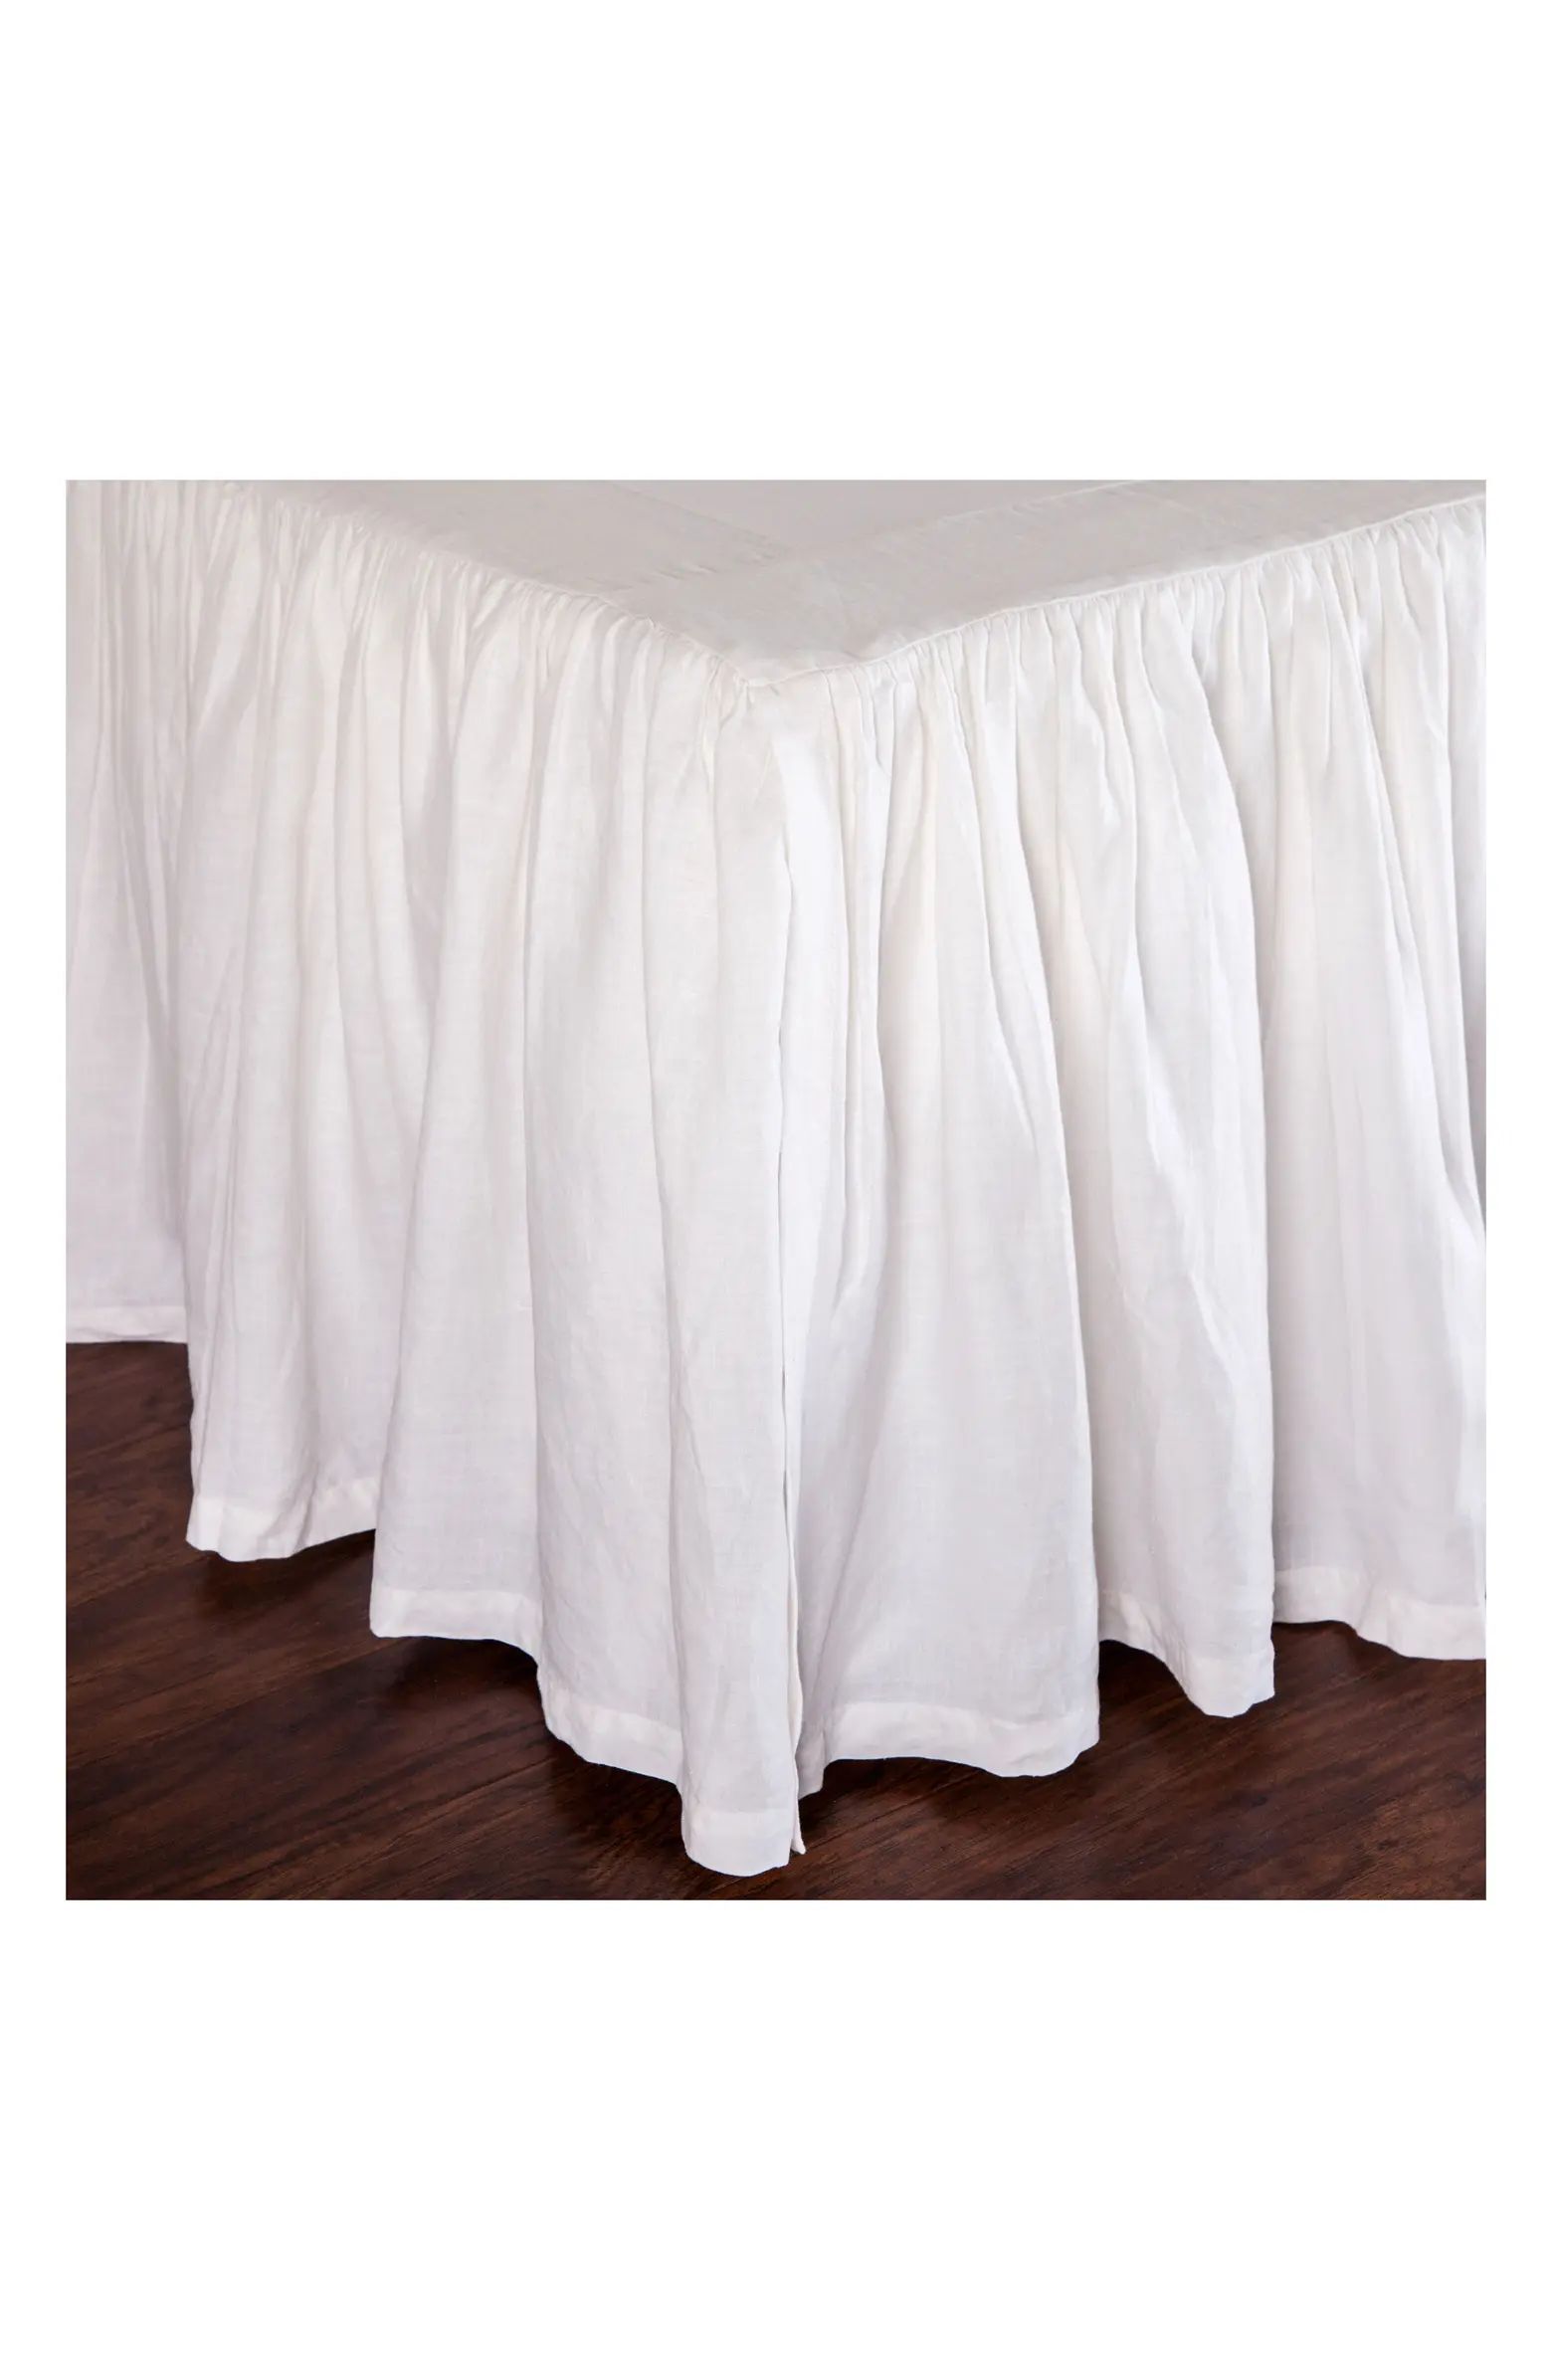 Gathered Linen Bed Skirt | Nordstrom